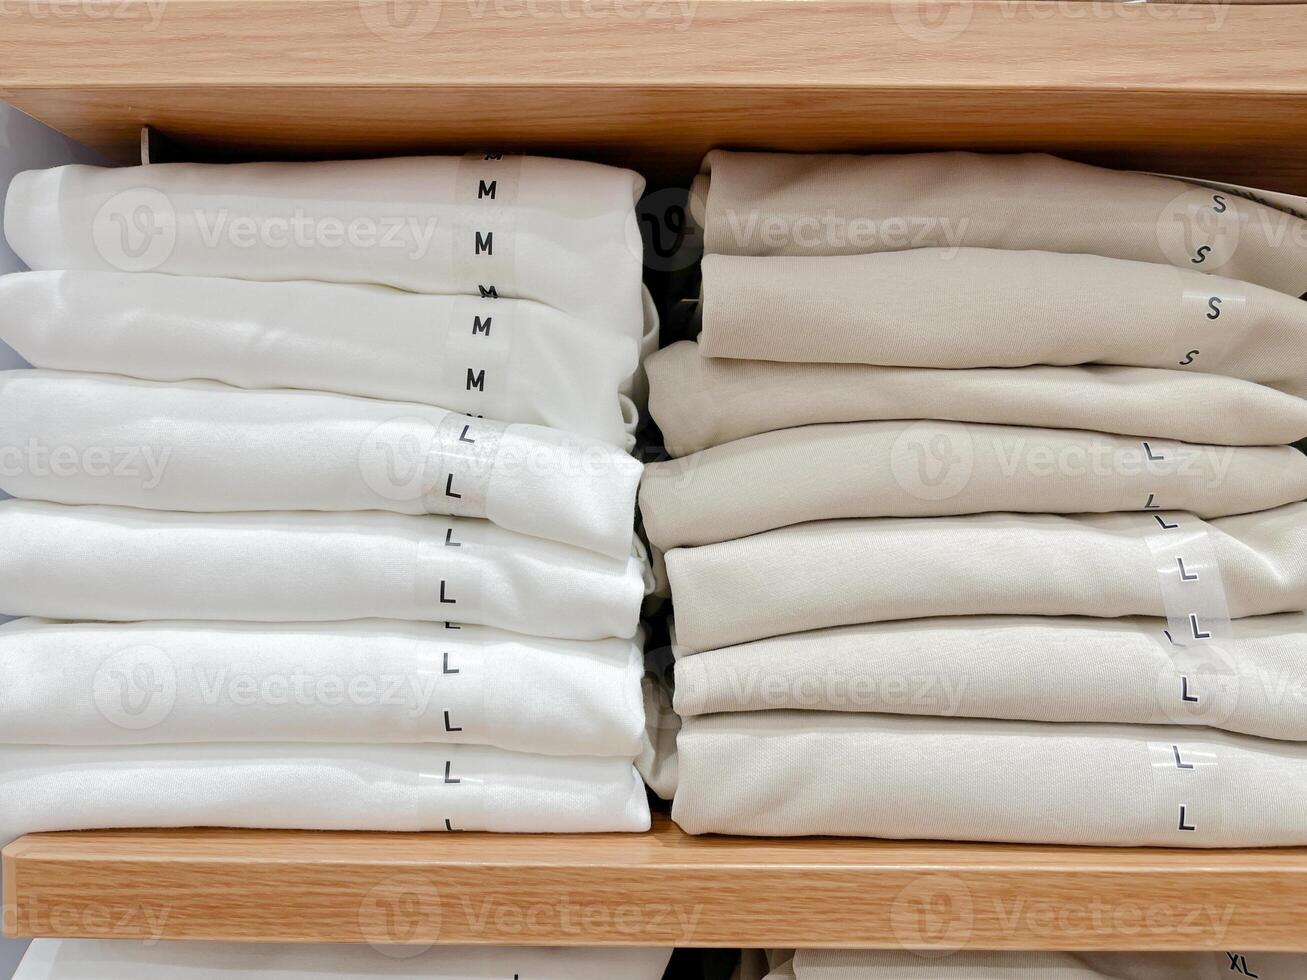 doblada camisas en un estante en un almacenar. foto